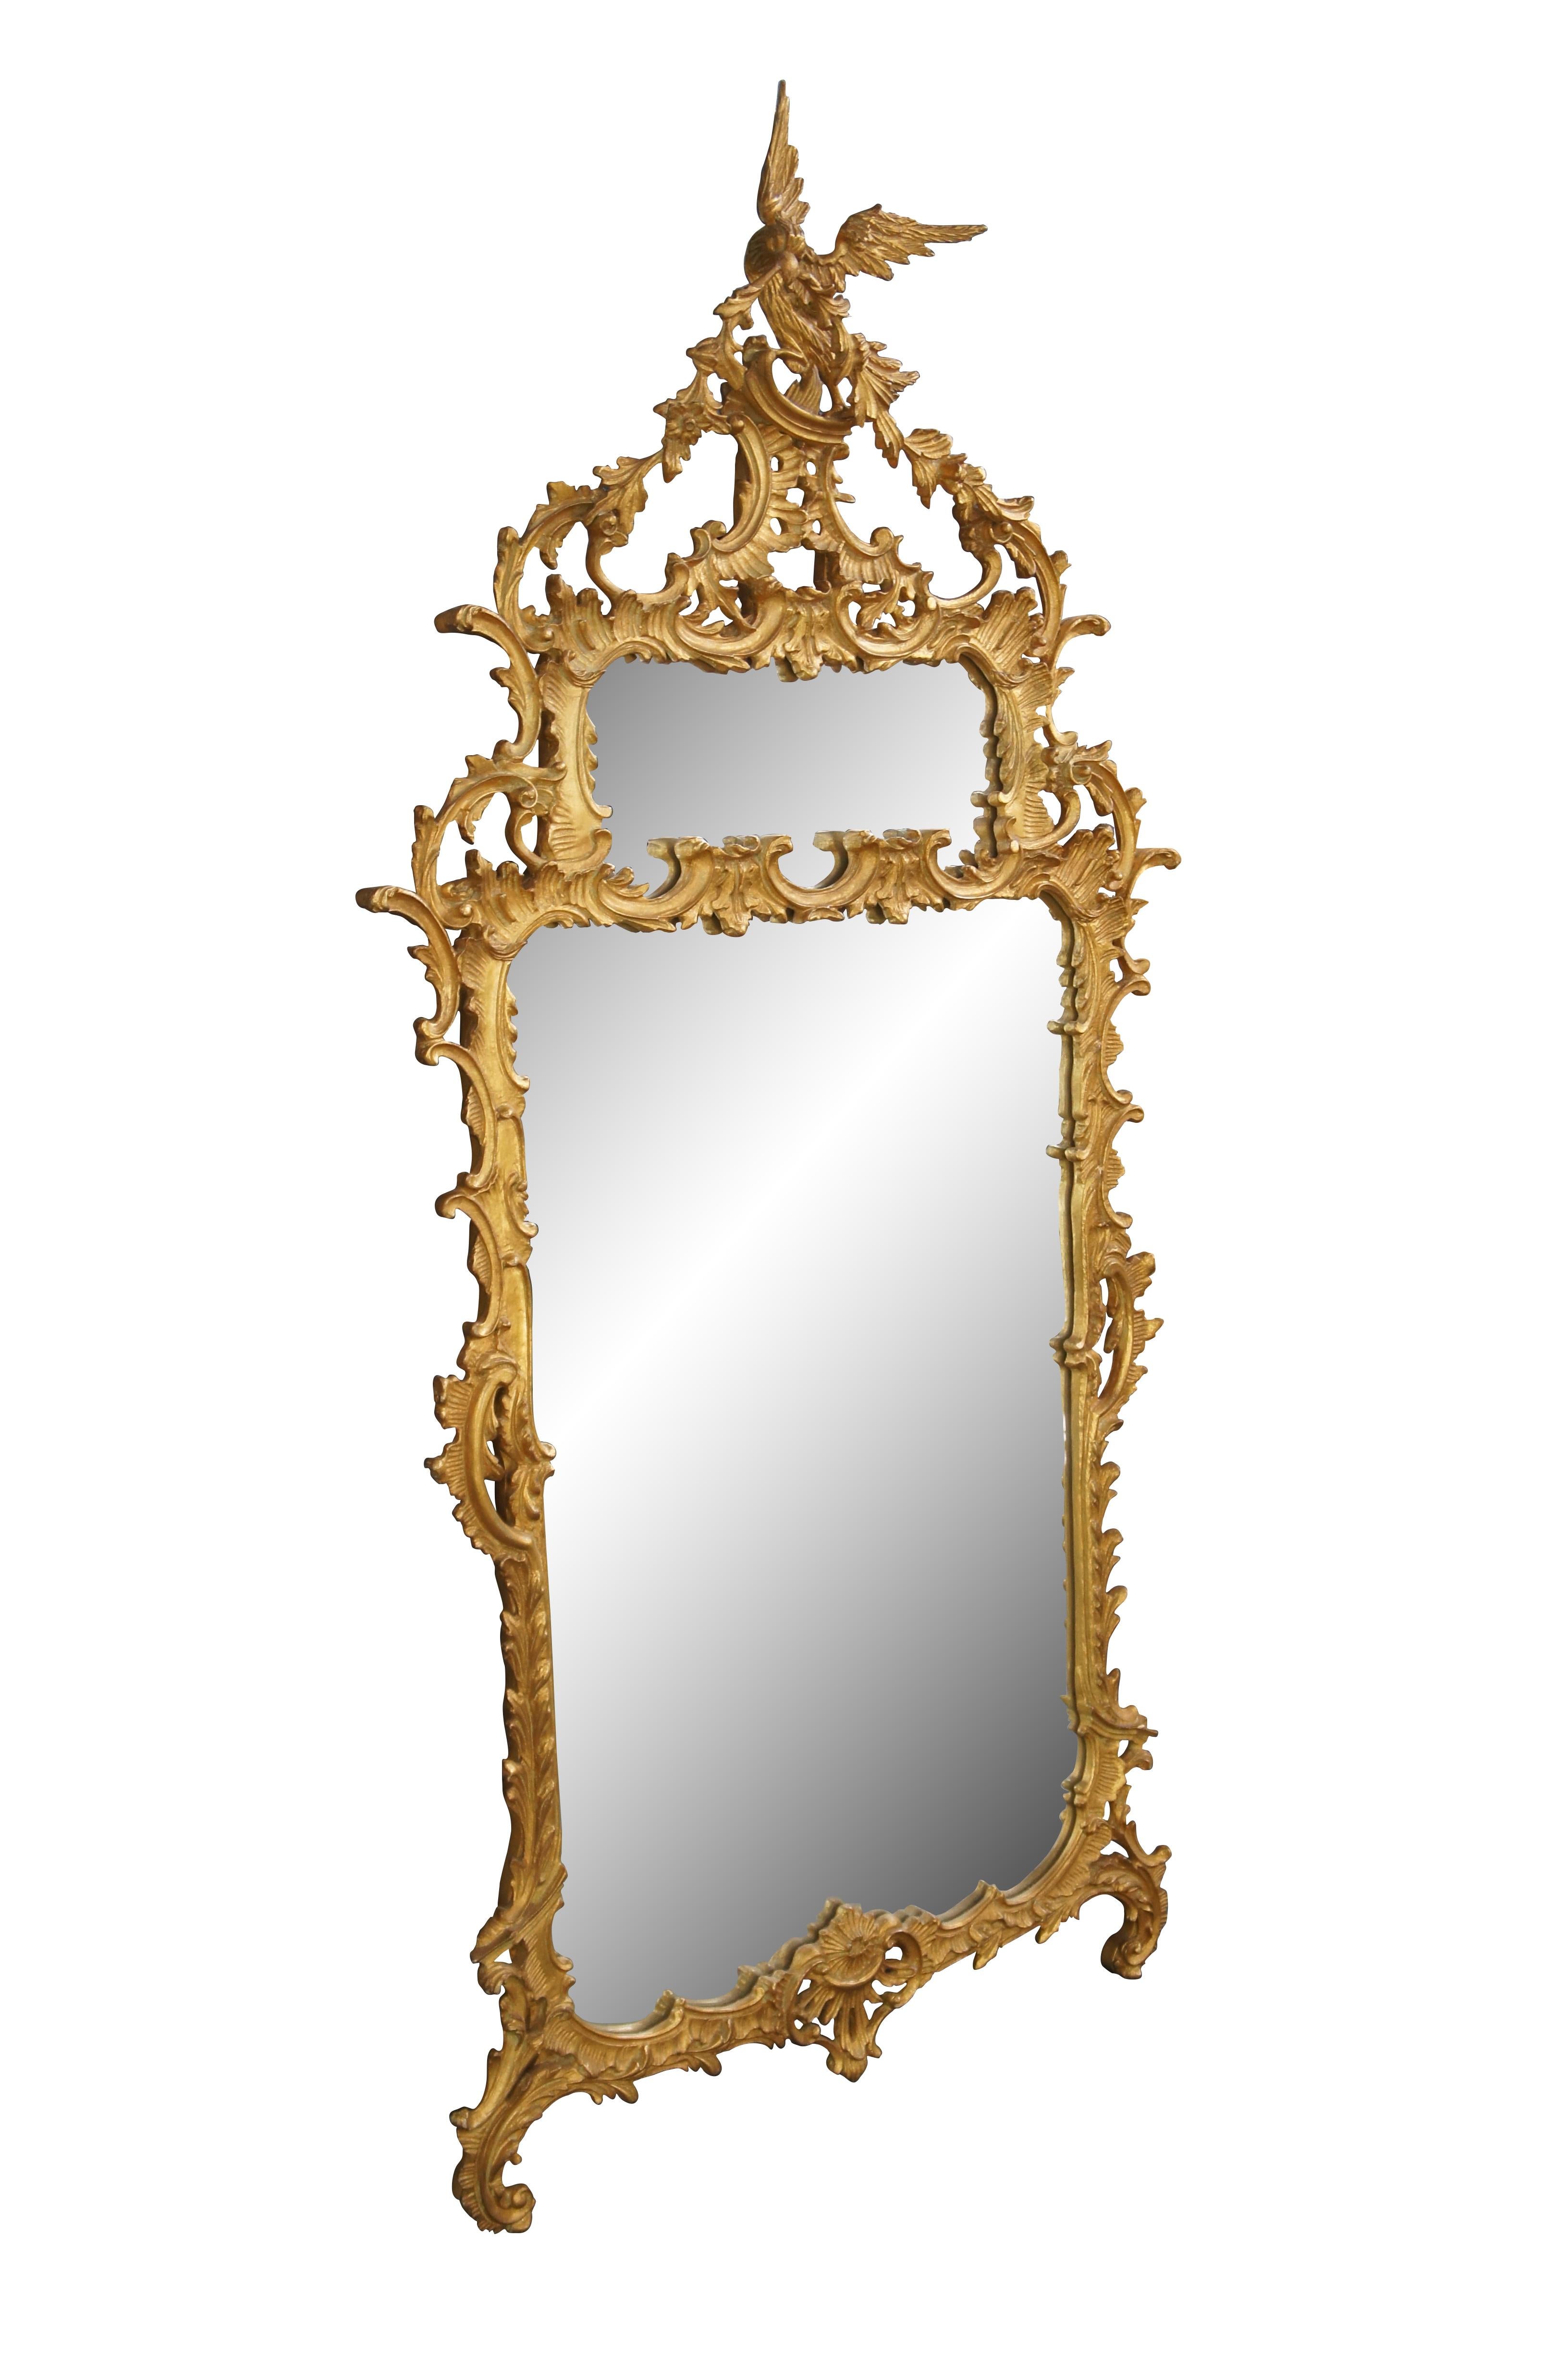 Magnifique miroir Chippendale du XVIIIe siècle. Ce grand miroir Chippendale est d'une taille impressionnante de 80 pouces. Fini en or patiné avec un cadre spectaculaire de volutes, de festons et de feuillages rococo percés A.C.C. Le Phoenix, ou Ho